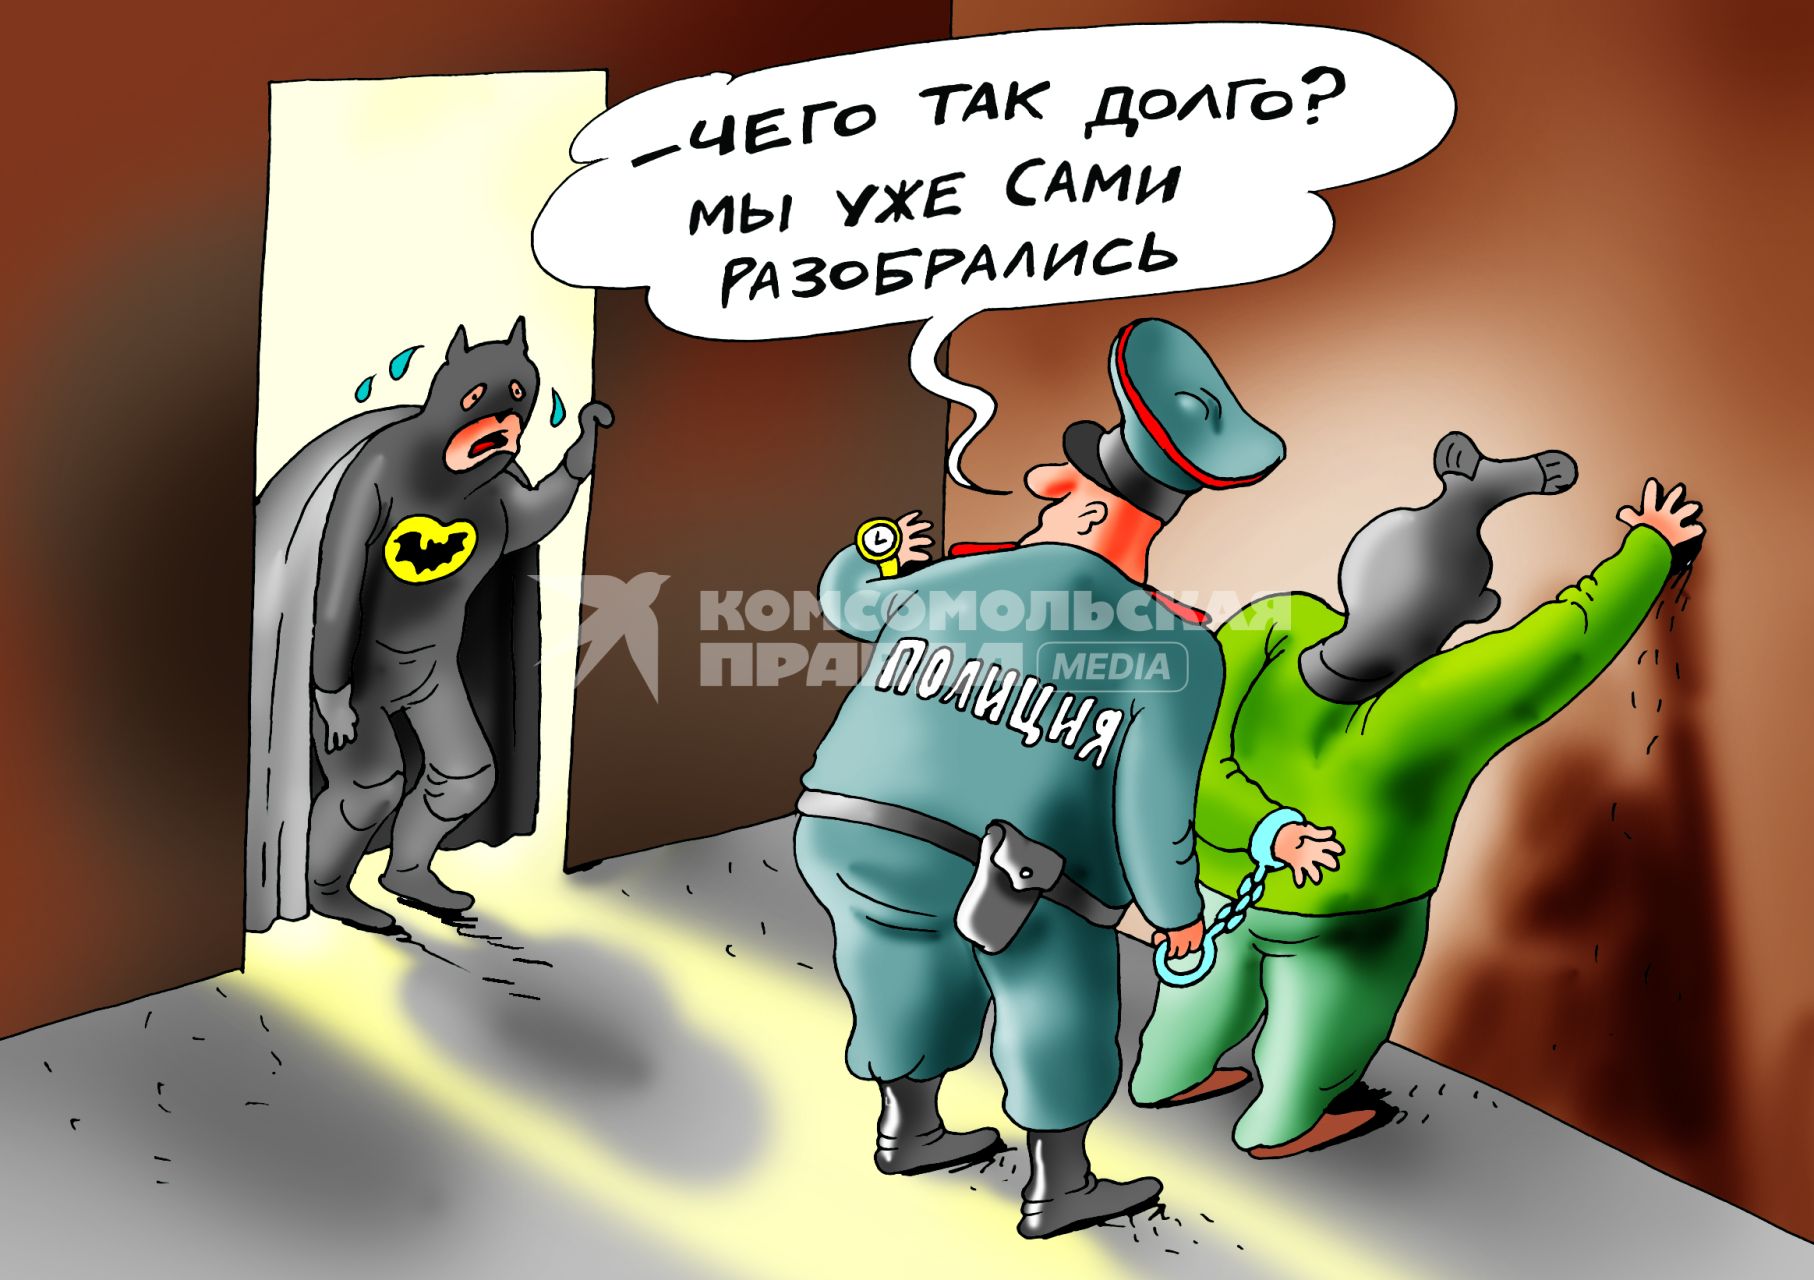 Карикатура на тему работы полиции.